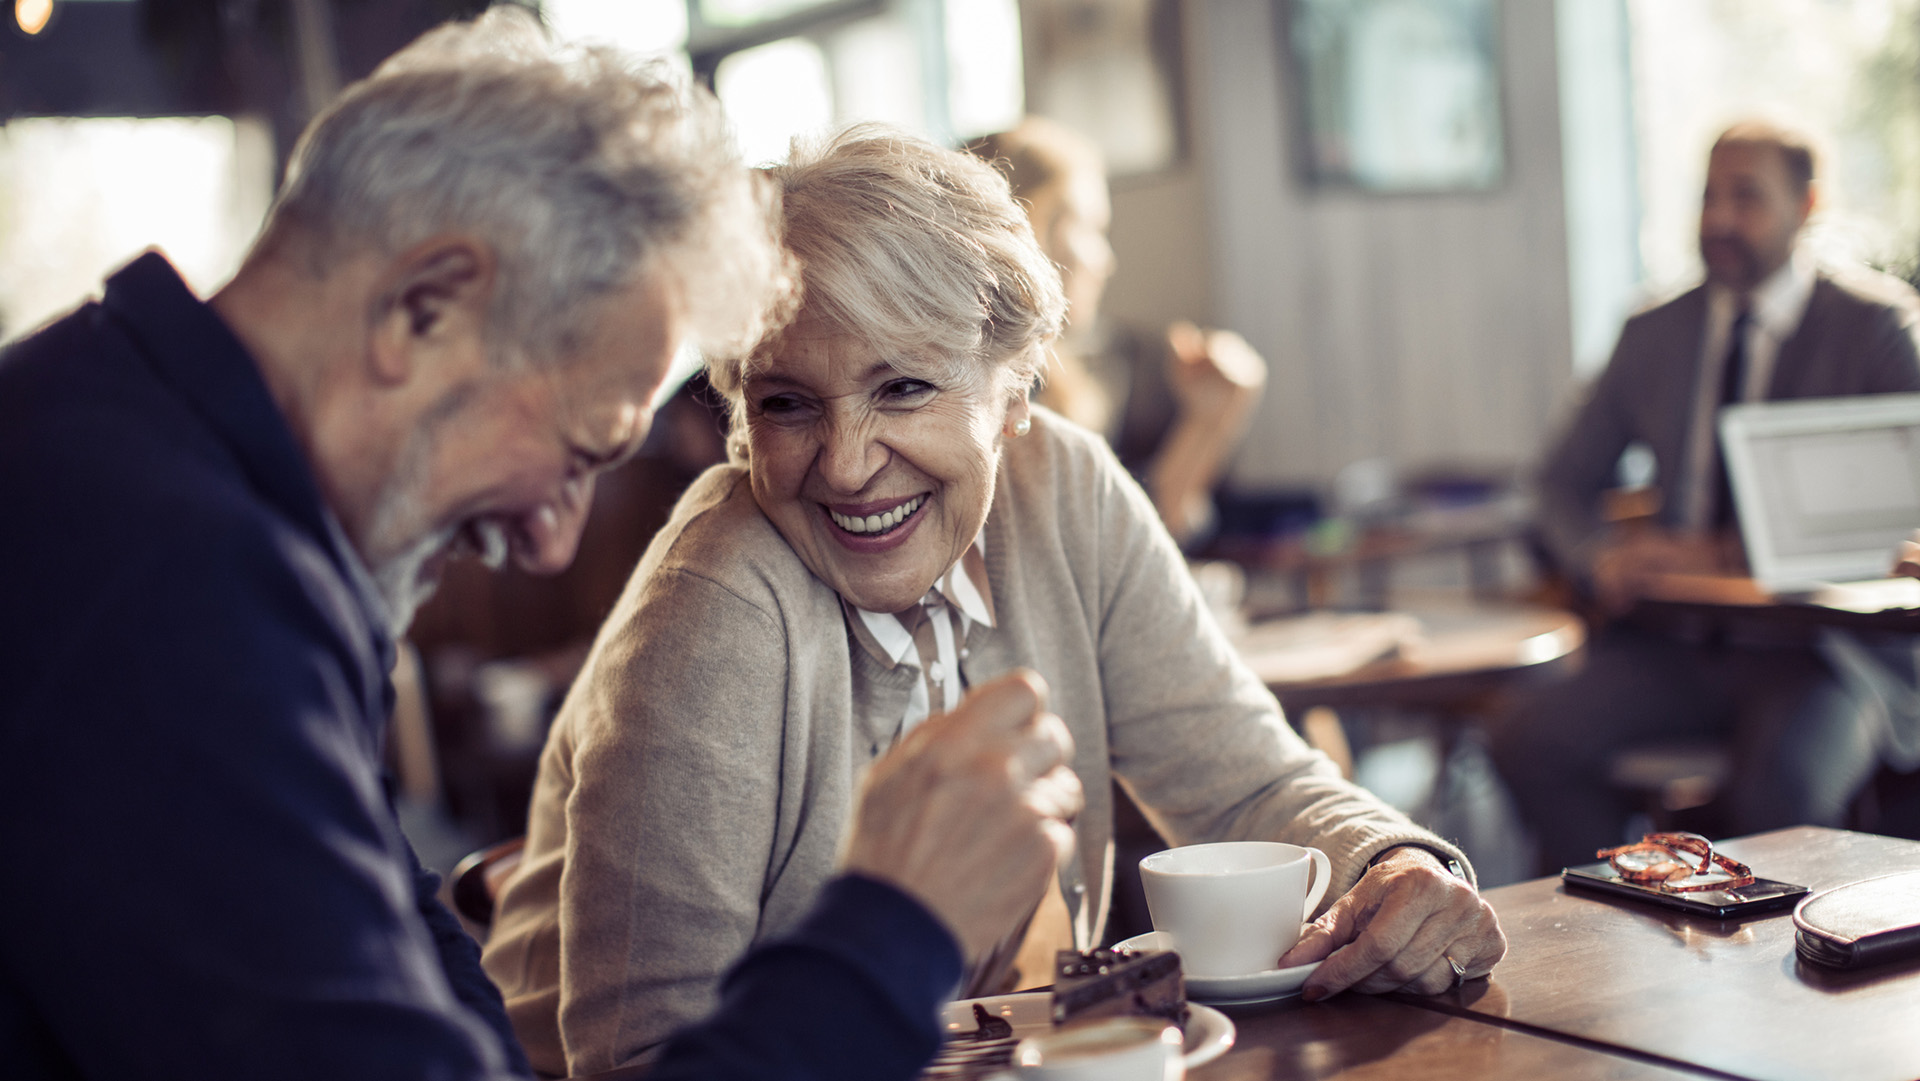 Las personas mayores se dividen en dos grupos a medida que envejecen: los que se vuelven mucho más felices y los que se vuelven mucho más infelices, sostuvo el investigador de Harvard